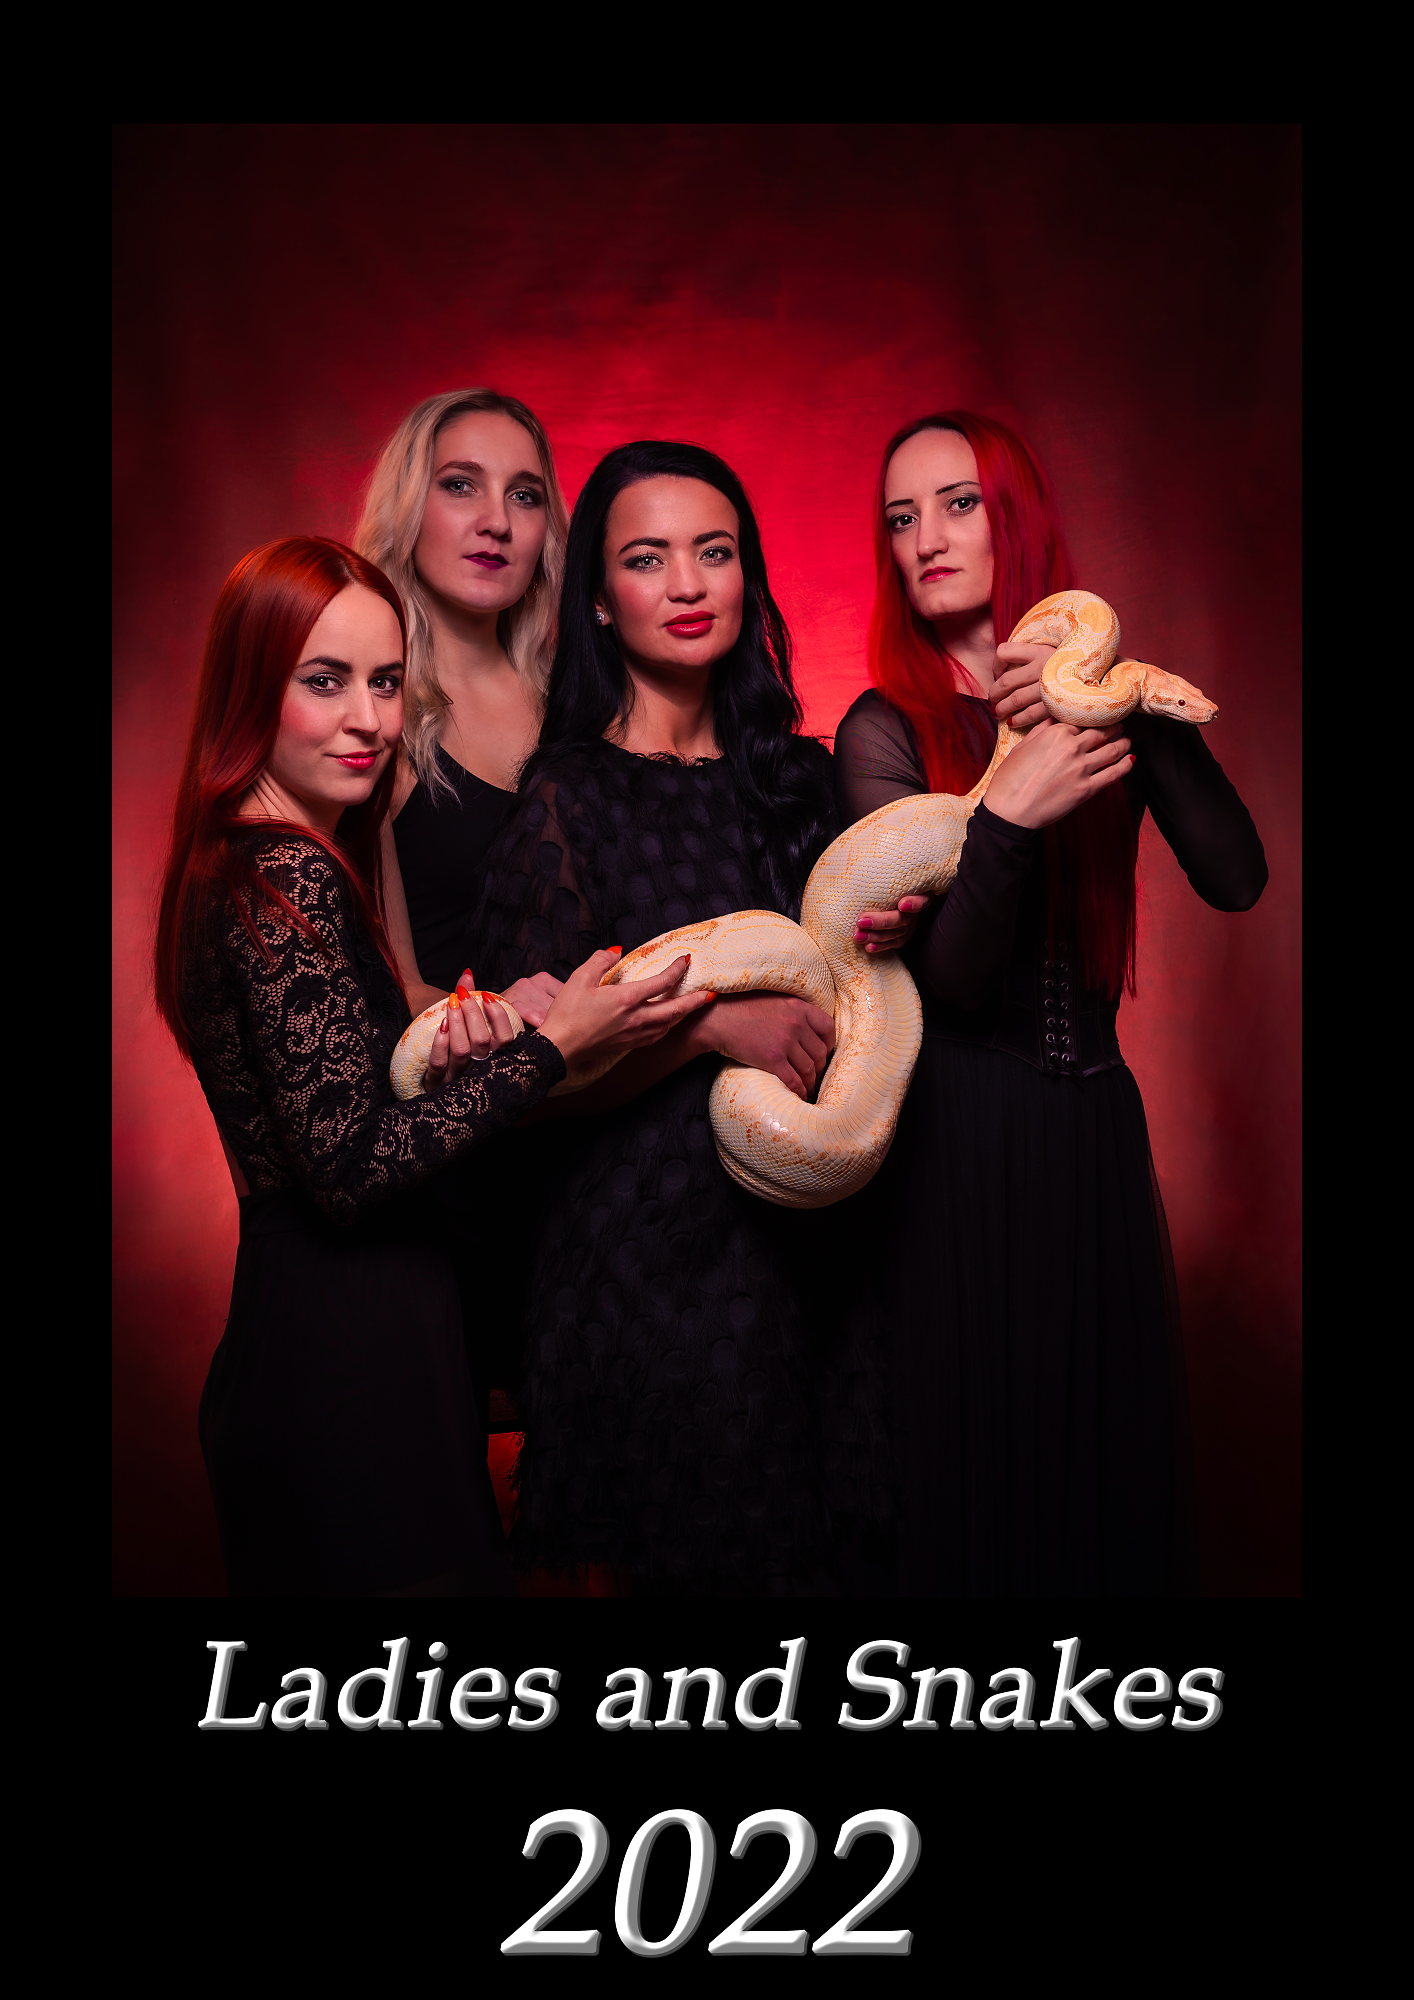 kalendař, kalendar, ladis and snakes, modelka s hadem, snakes, model, dahi, atelier, www.pavelvyskocil.cz